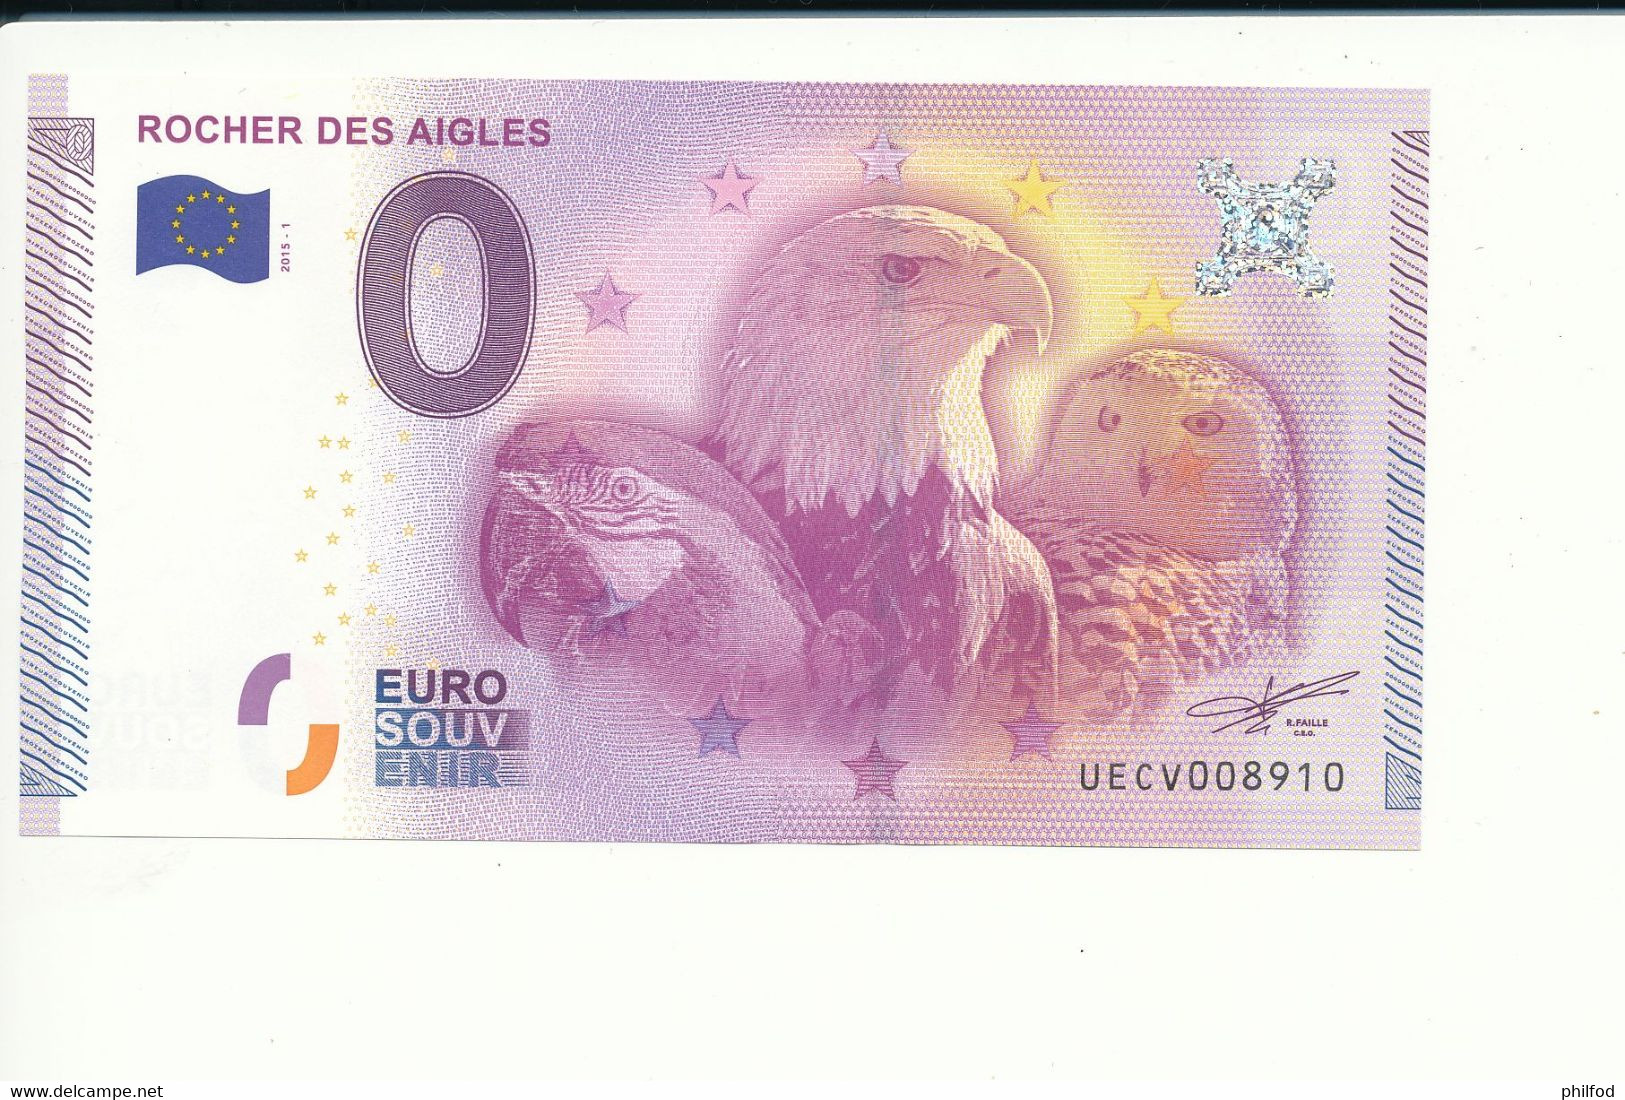 2015-1 - Billet Souvenir - 0 Euro - UECV - ROCHER DES AIGLES -  N° 8910 - Billet épuisé - Essais Privés / Non-officiels